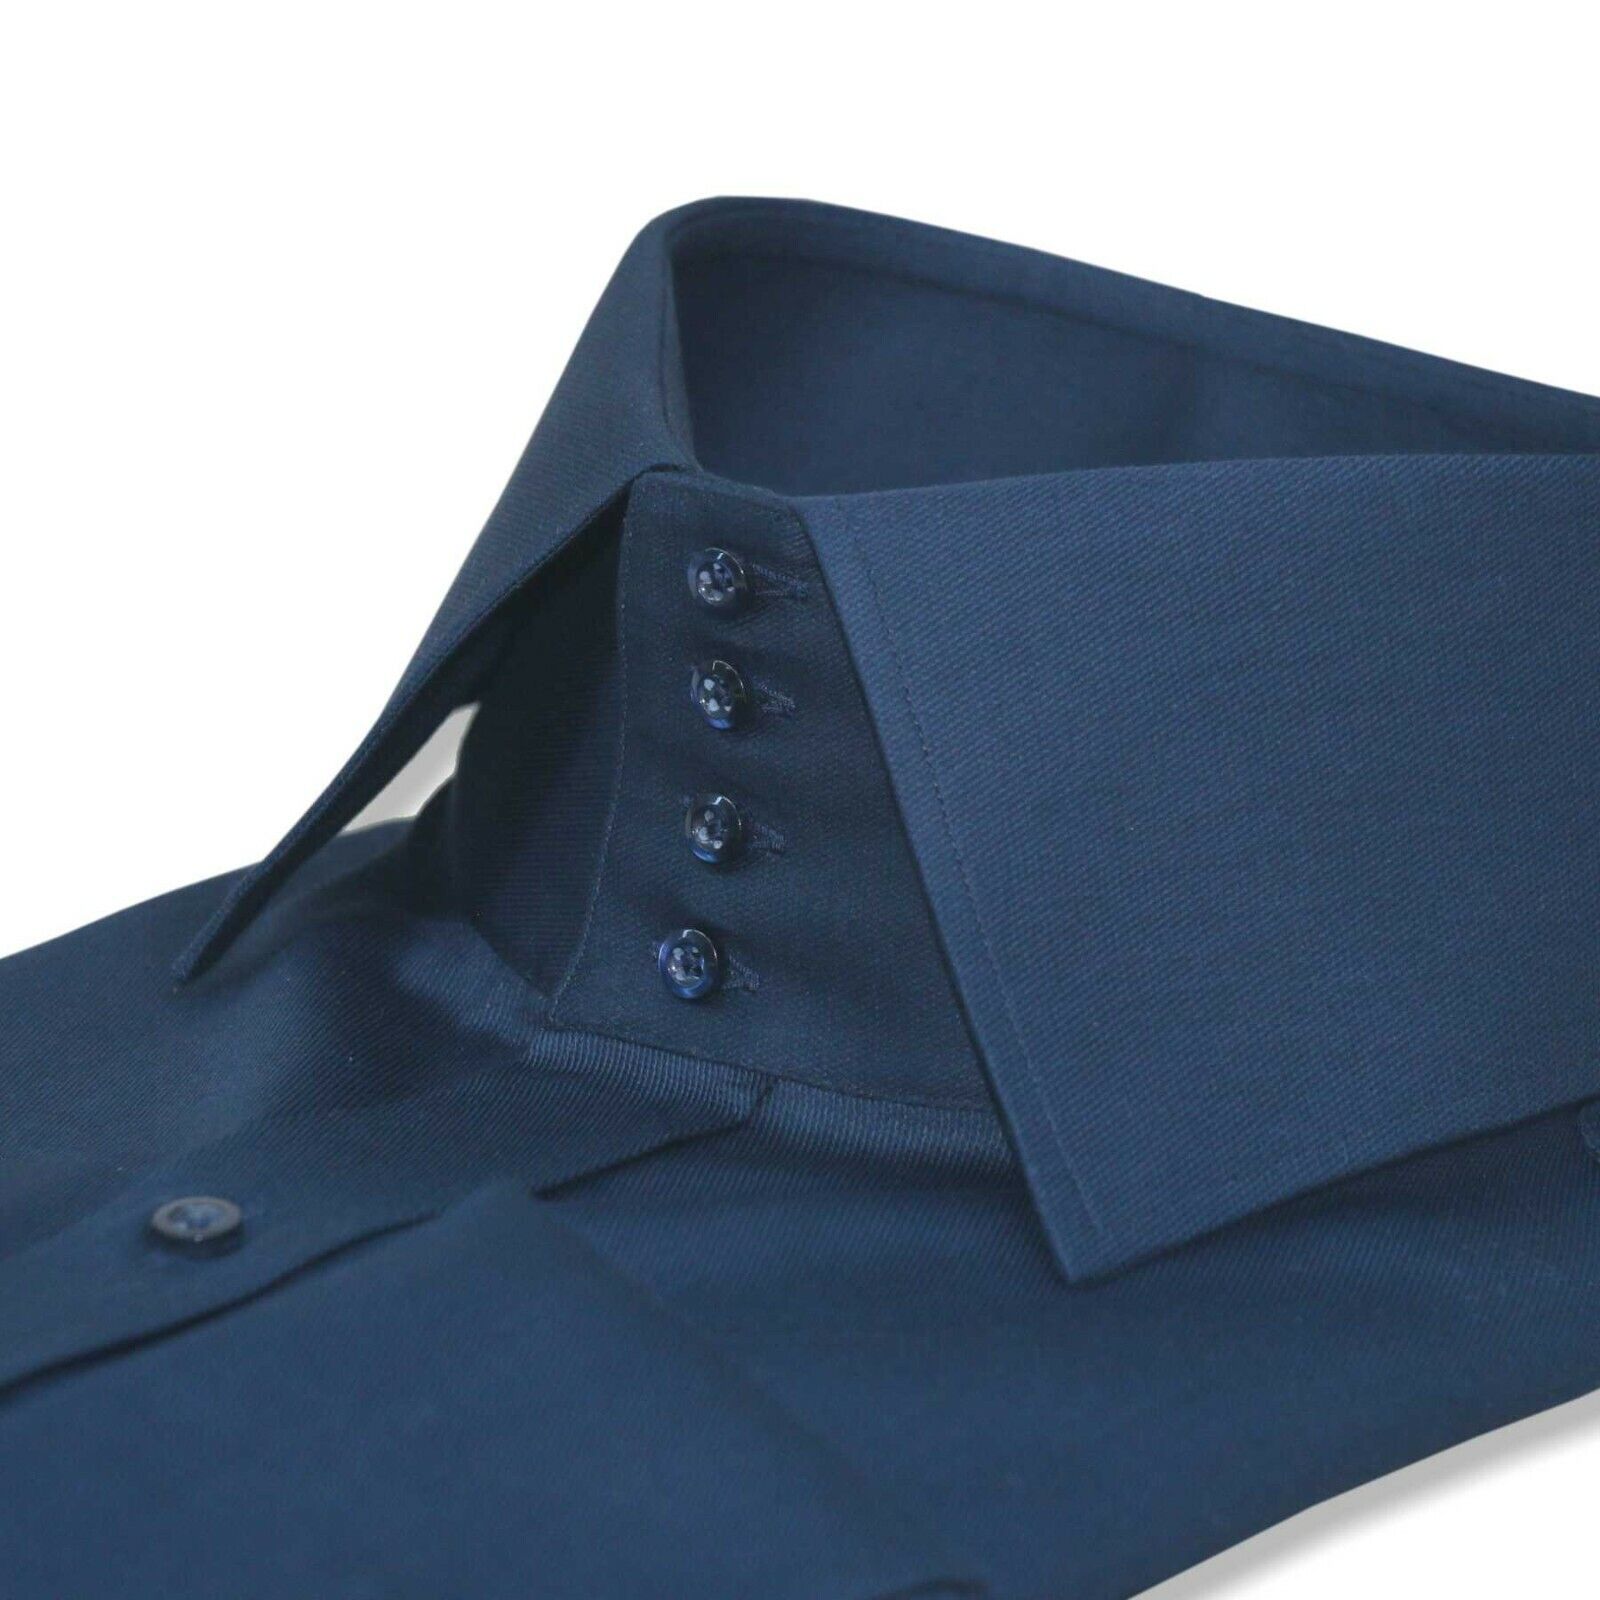 Mens High collar shirt Navy Blue 4 buttons Spread collar tall neck 